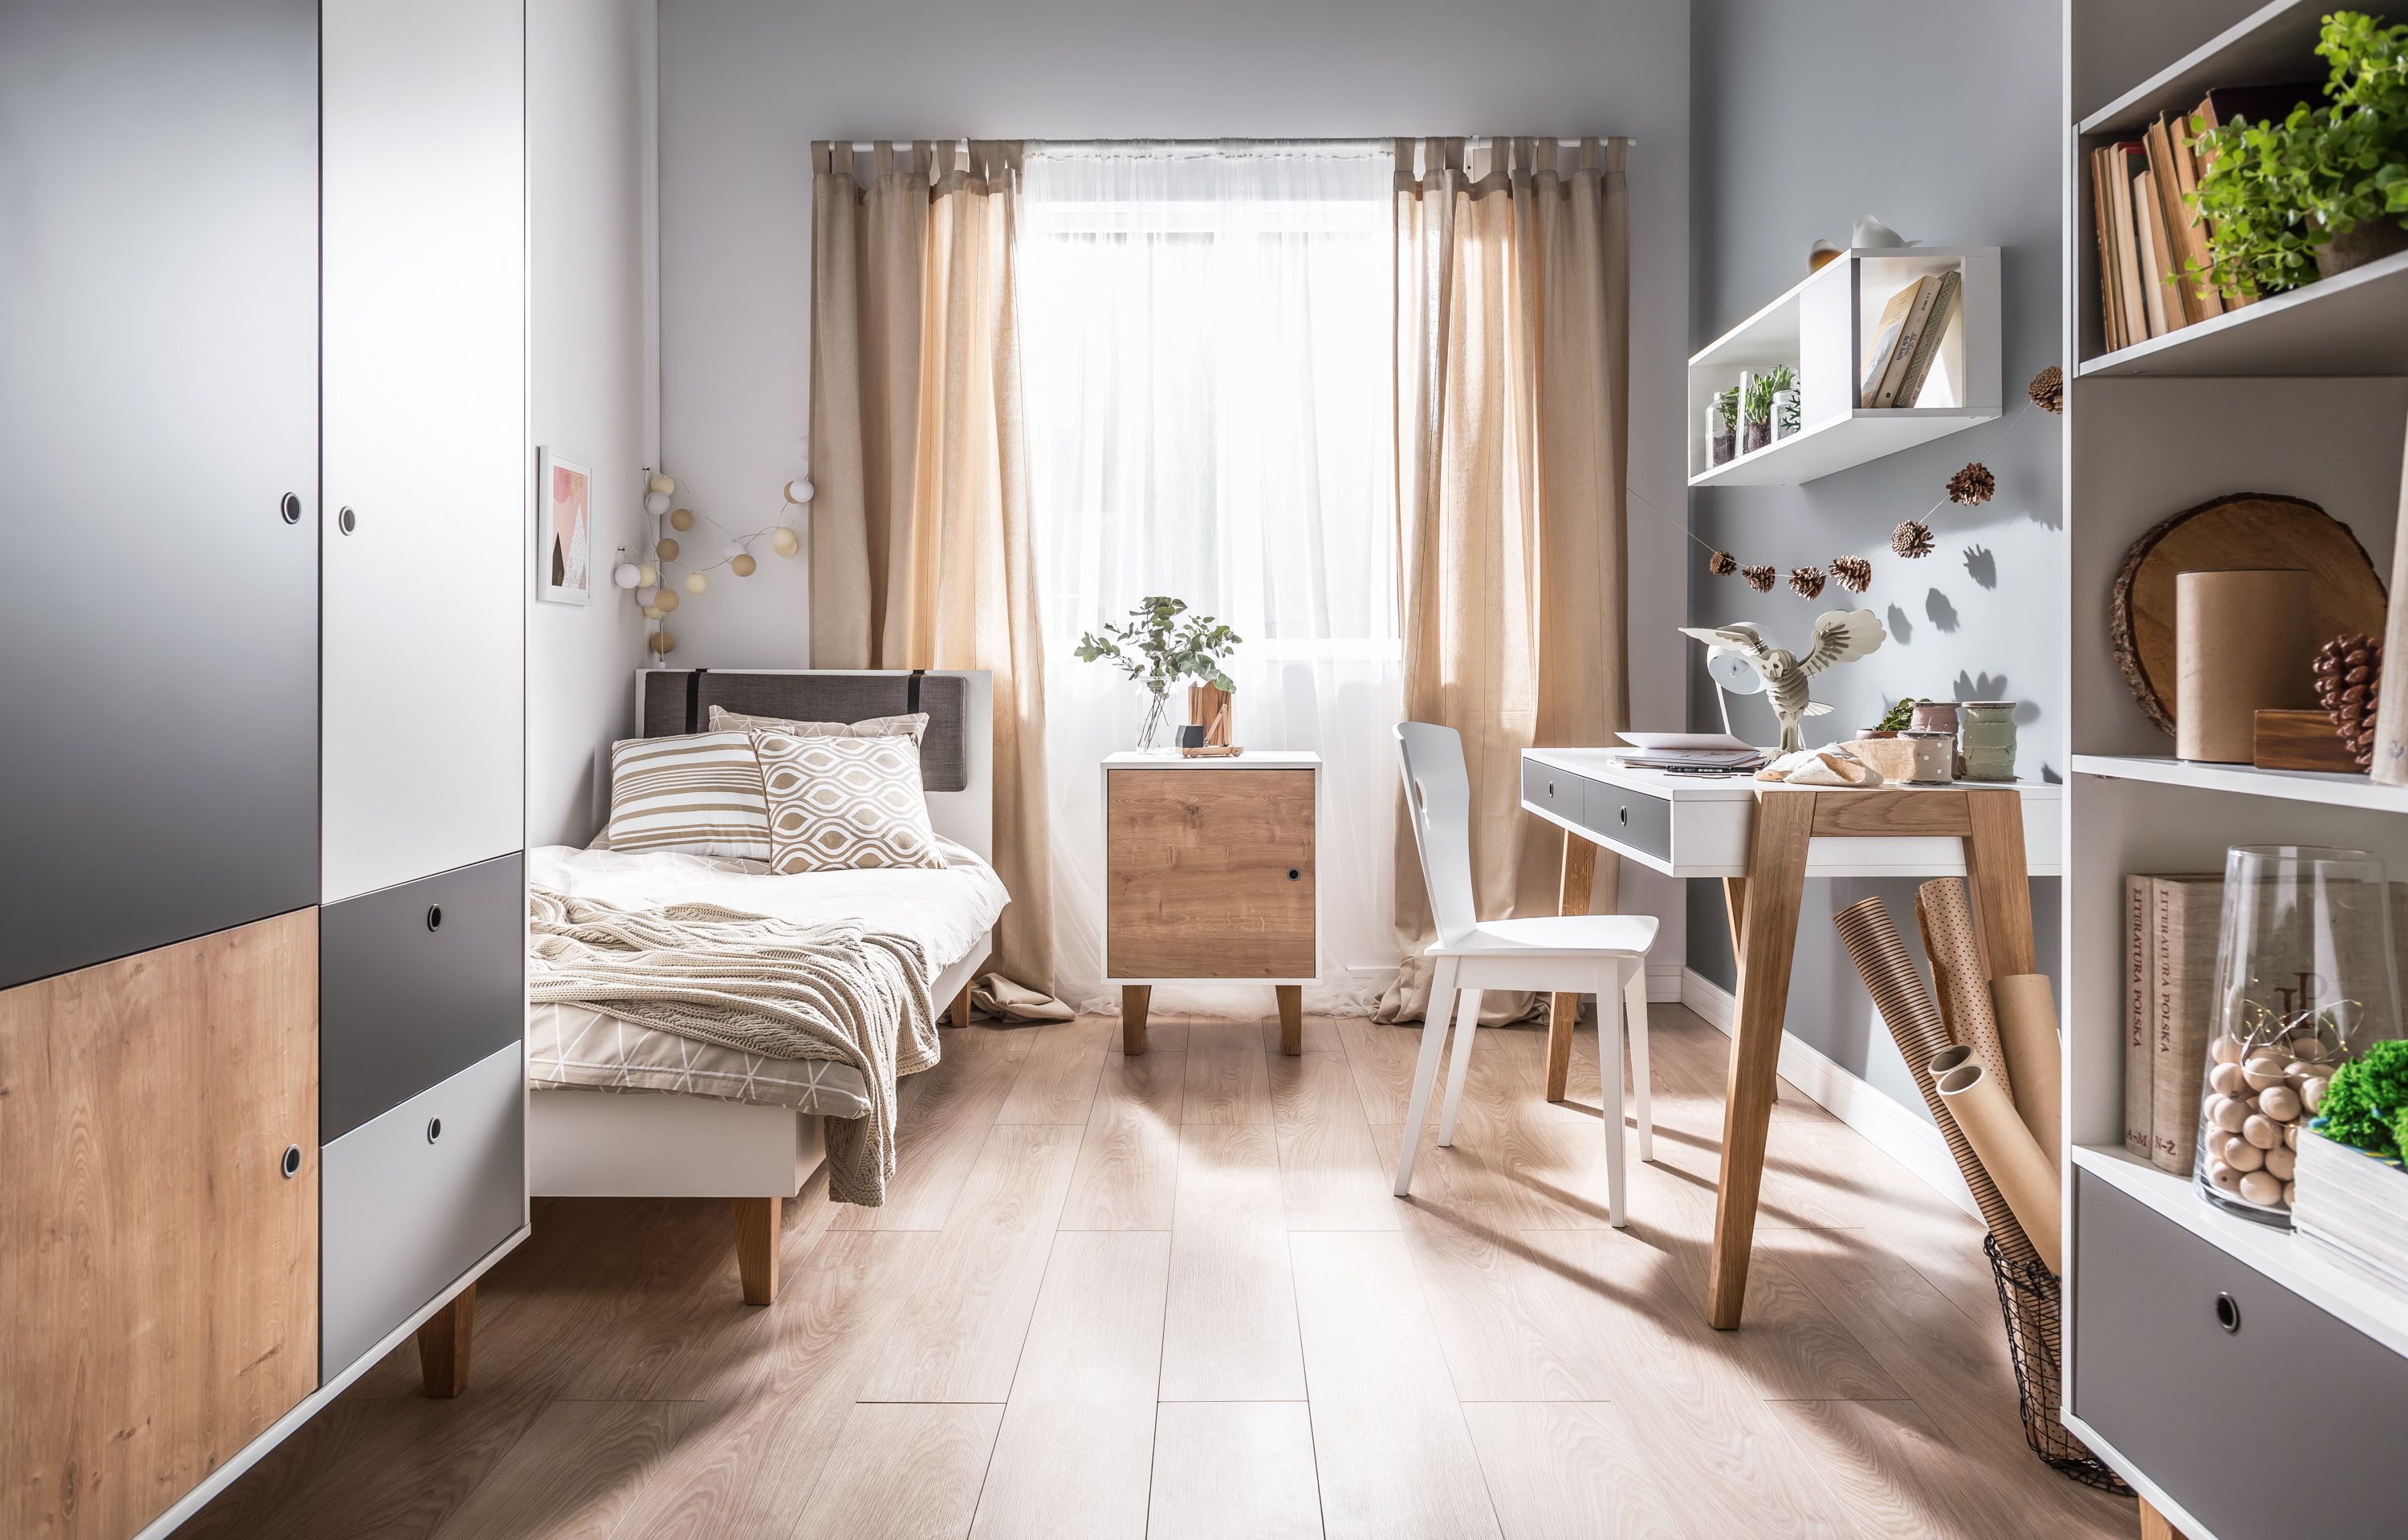 Ein kleines Schlafzimmer in einer Wohnung - eine Einschränkung oder eine schnelle Gestaltungsmöglichkeit?